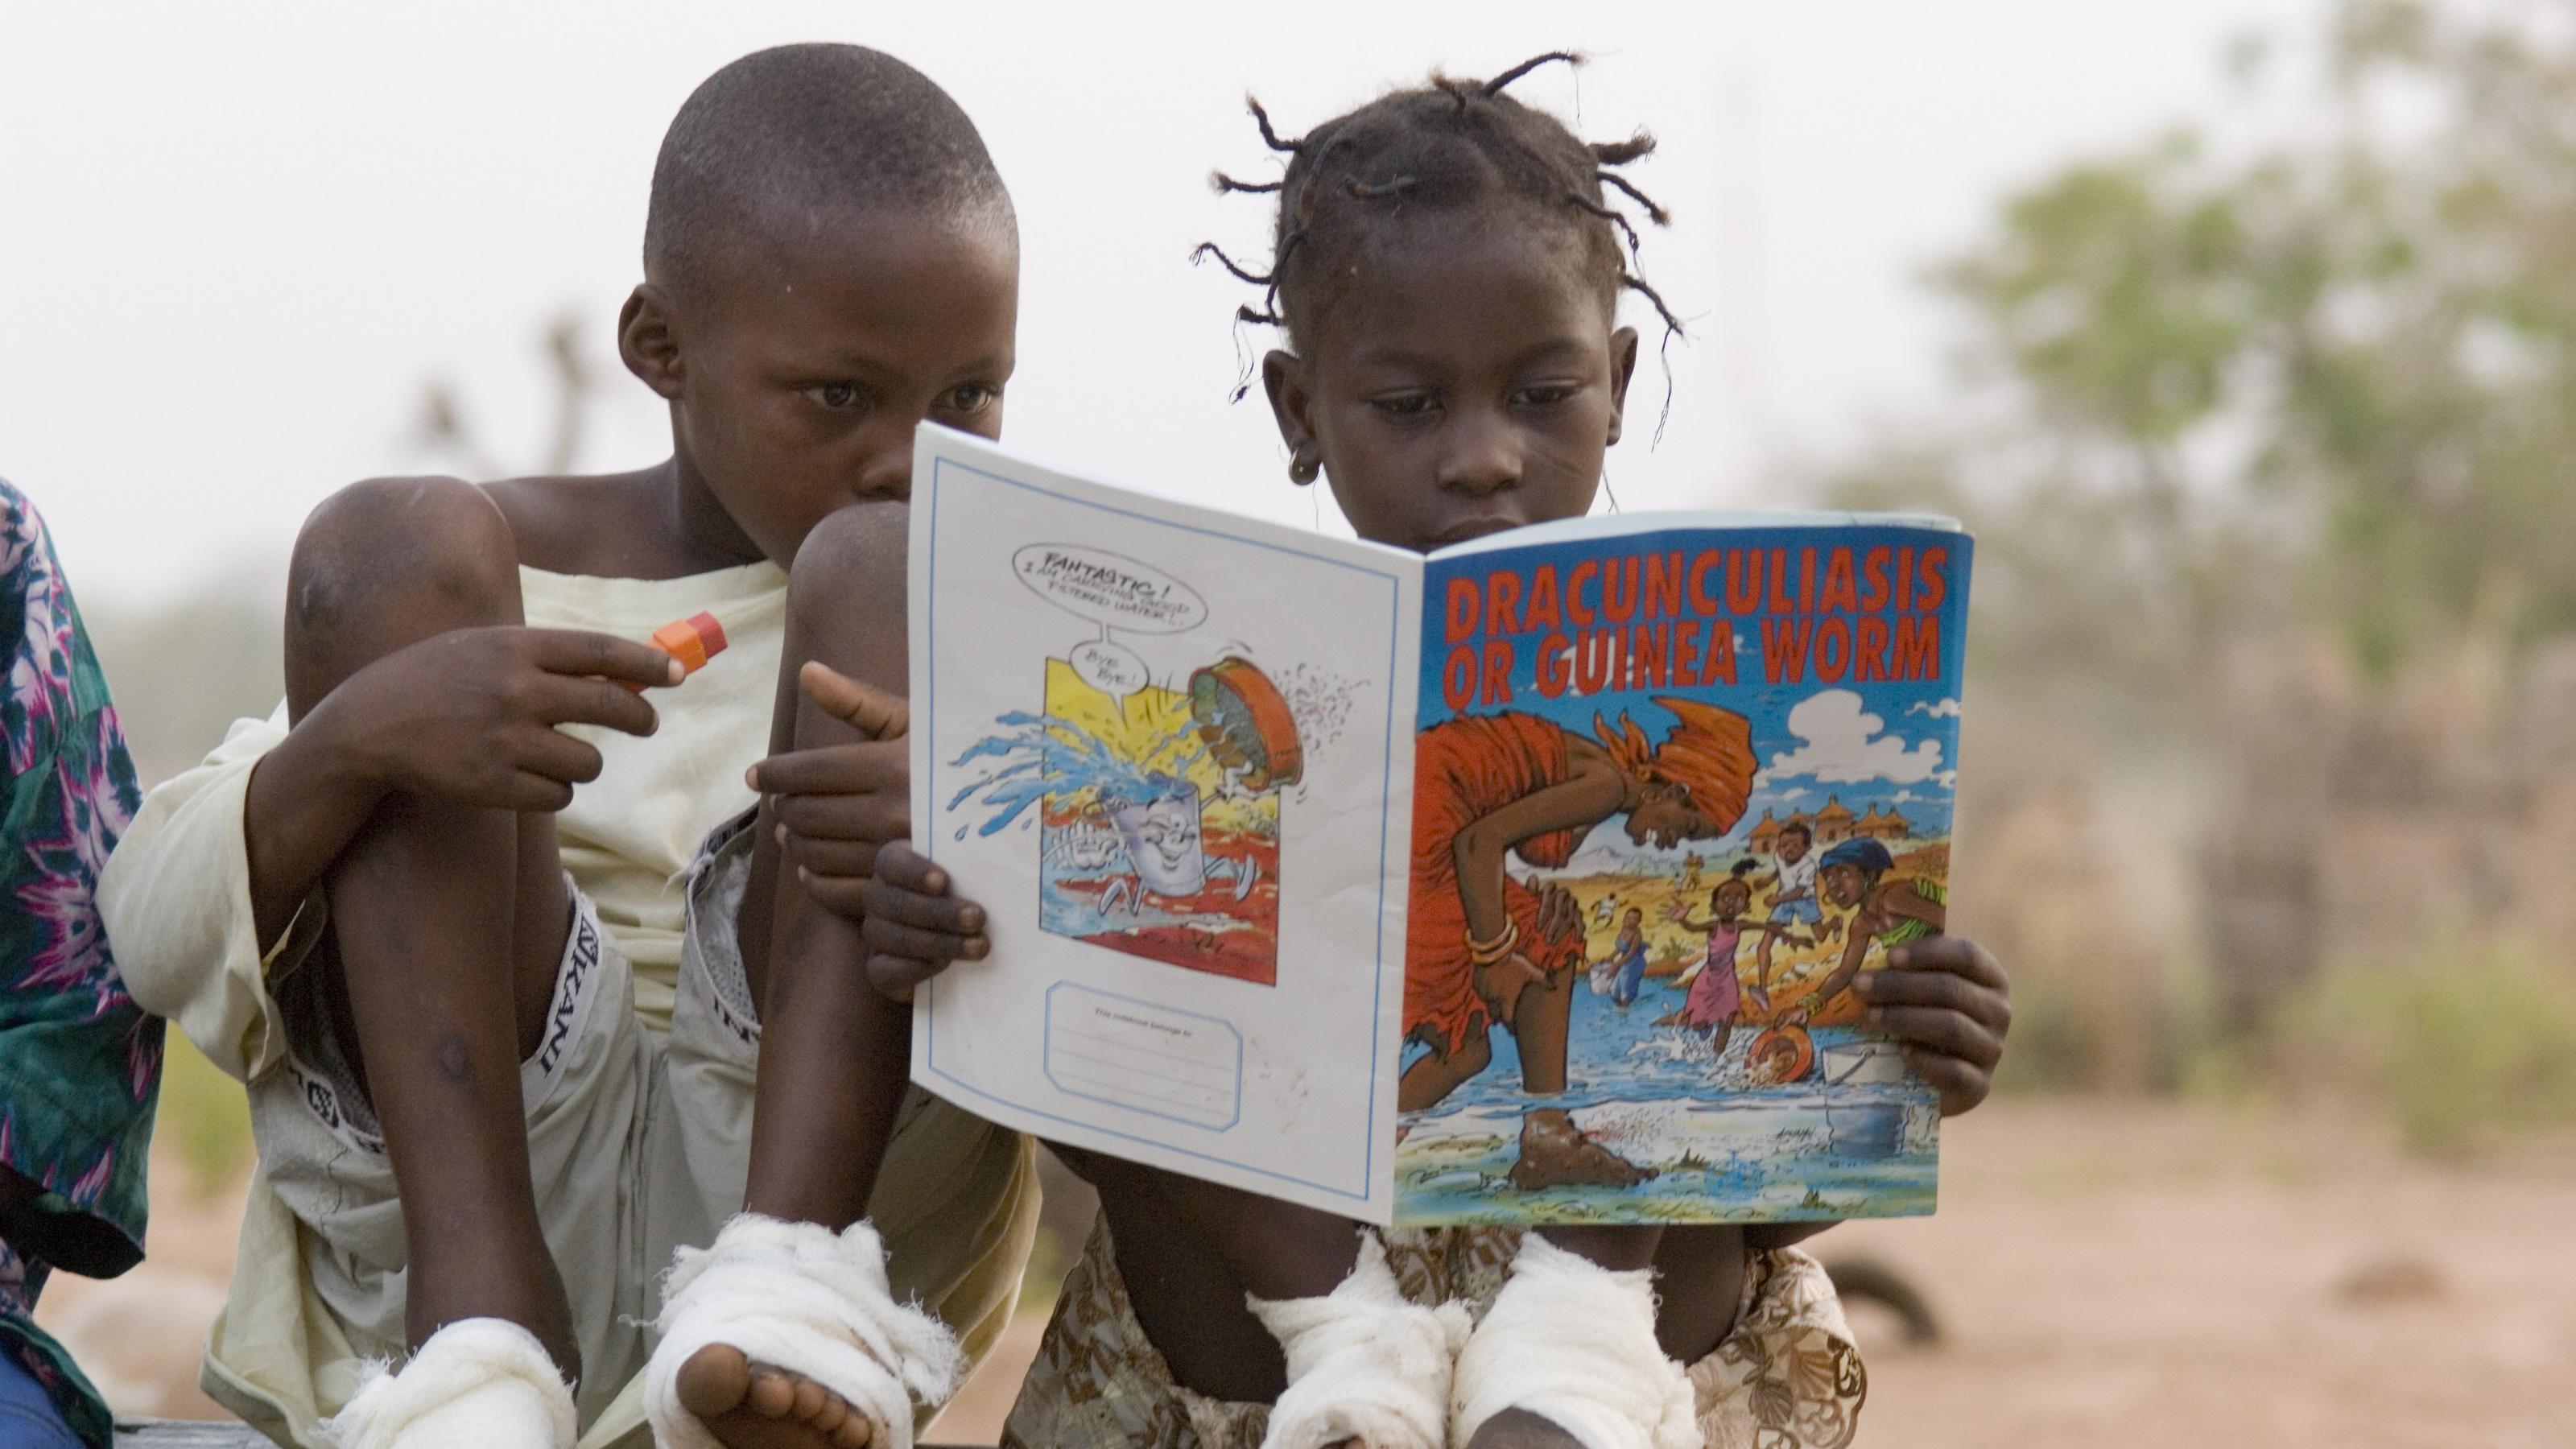 Zwei Kinder mit bandagierten Füßen lesen in einem Heft, in dem es um den Guineawurm geht.